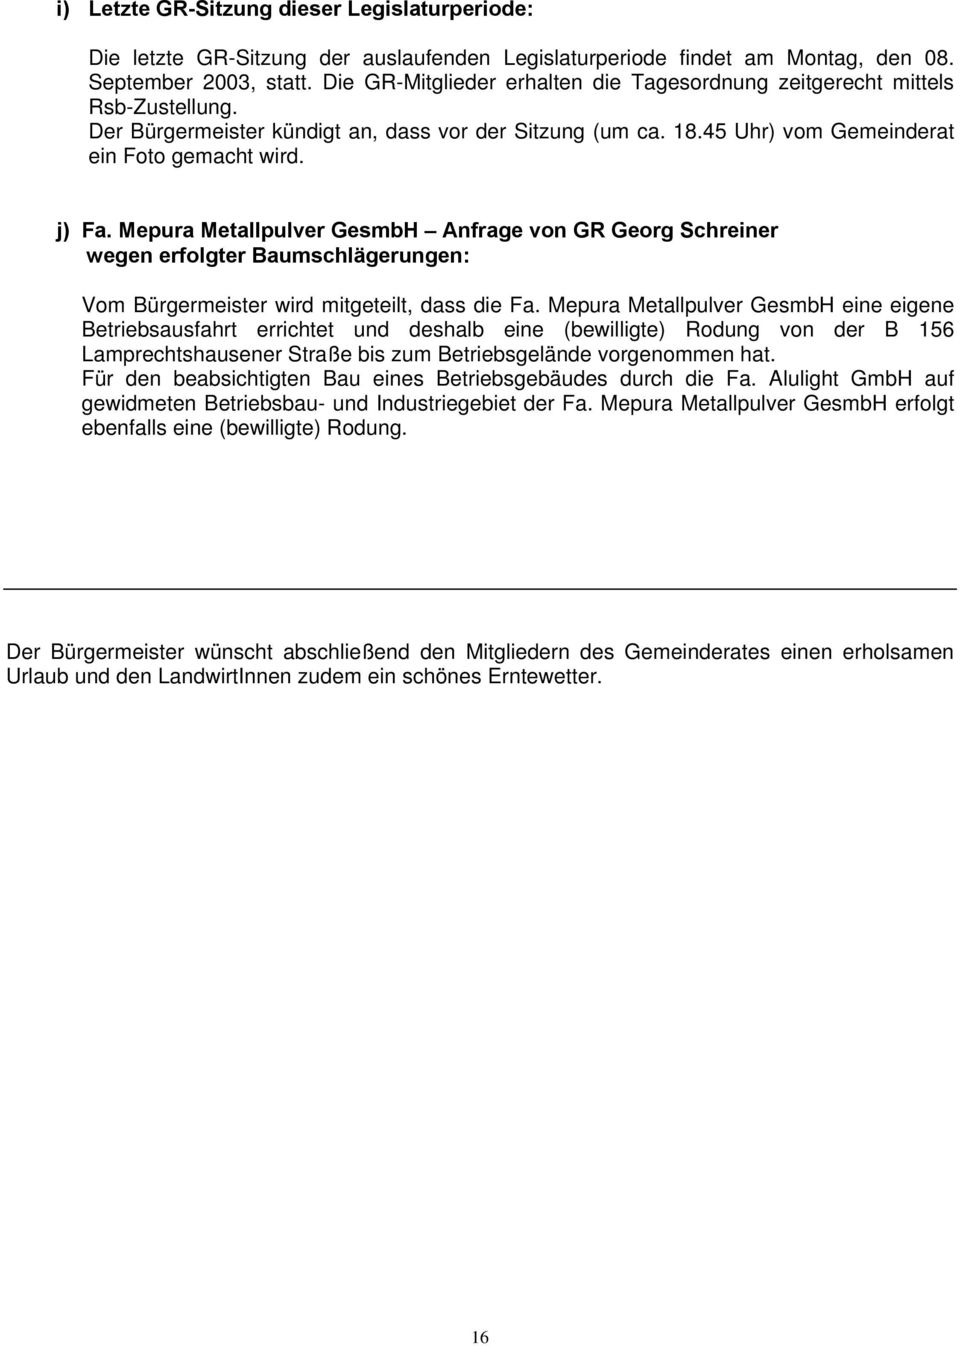 Mepura Metallpulver GesmbH Anfrage von GR Georg Schreiner wegen erfolgter Baumschlägerungen: Vom Bürgermeister wird mitgeteilt, dass die Fa.